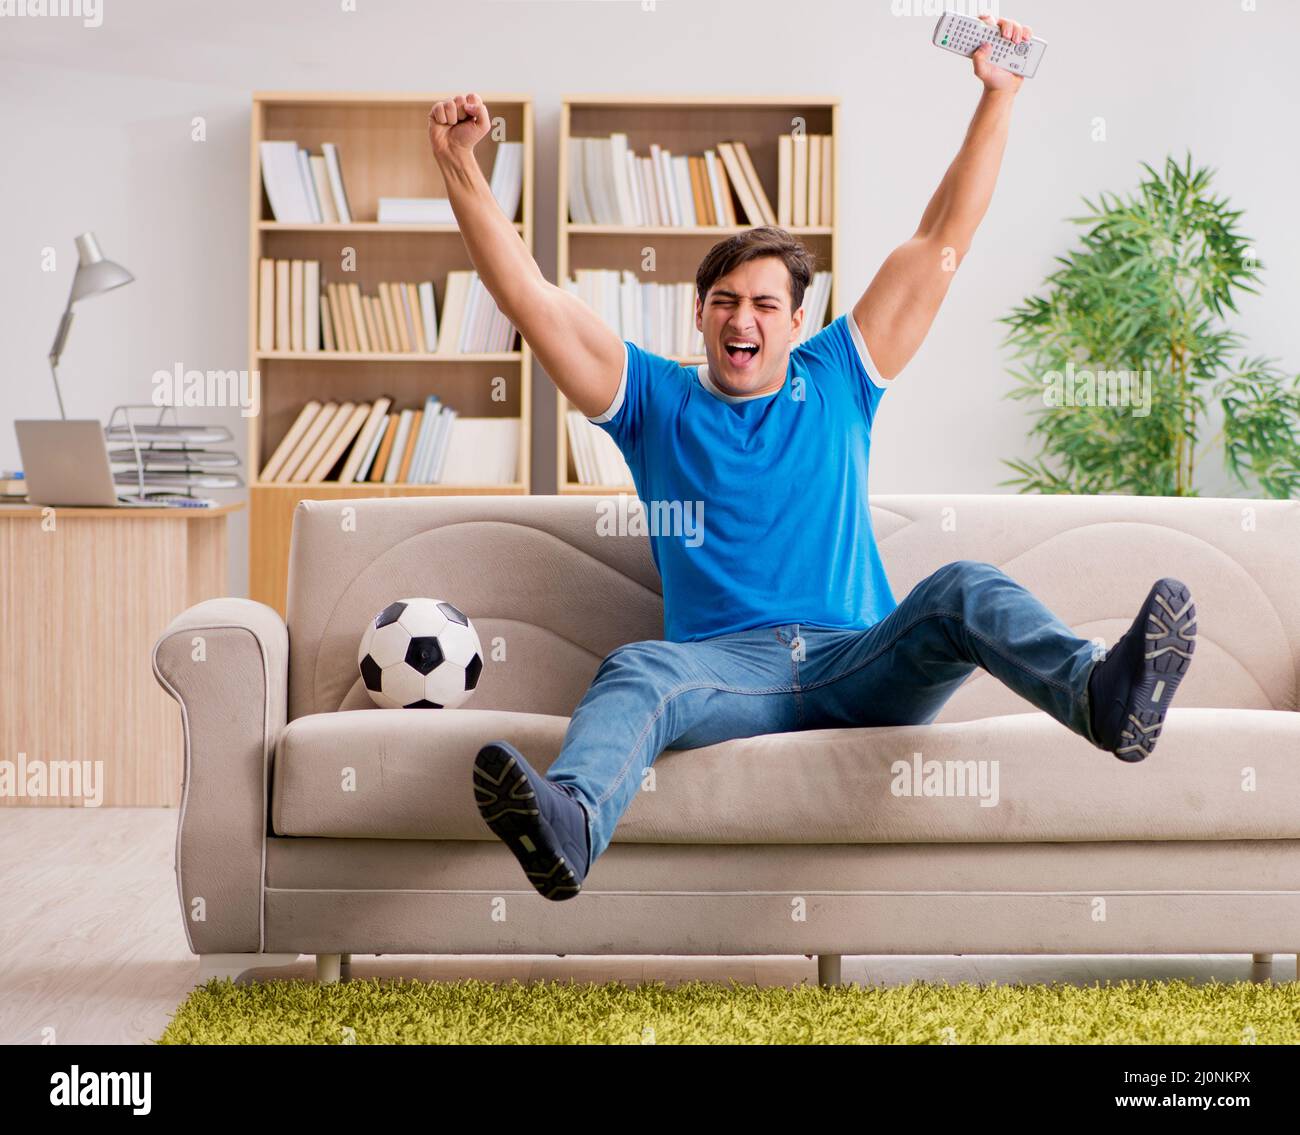 Man watching football at home Stock Photo